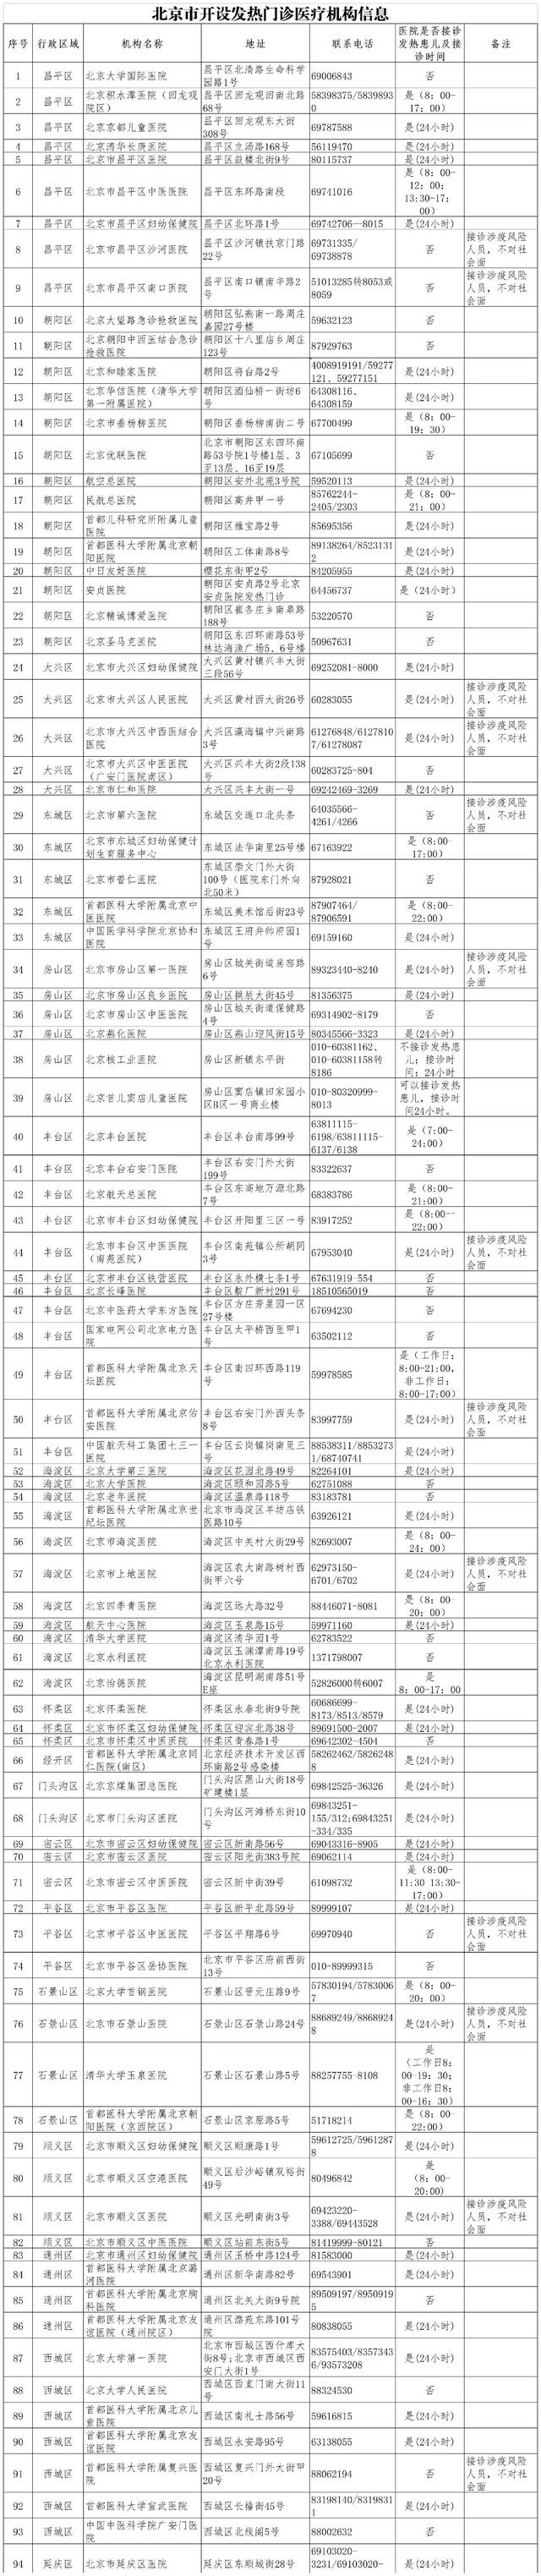 北京市公布开设发热门诊医疗机构名单